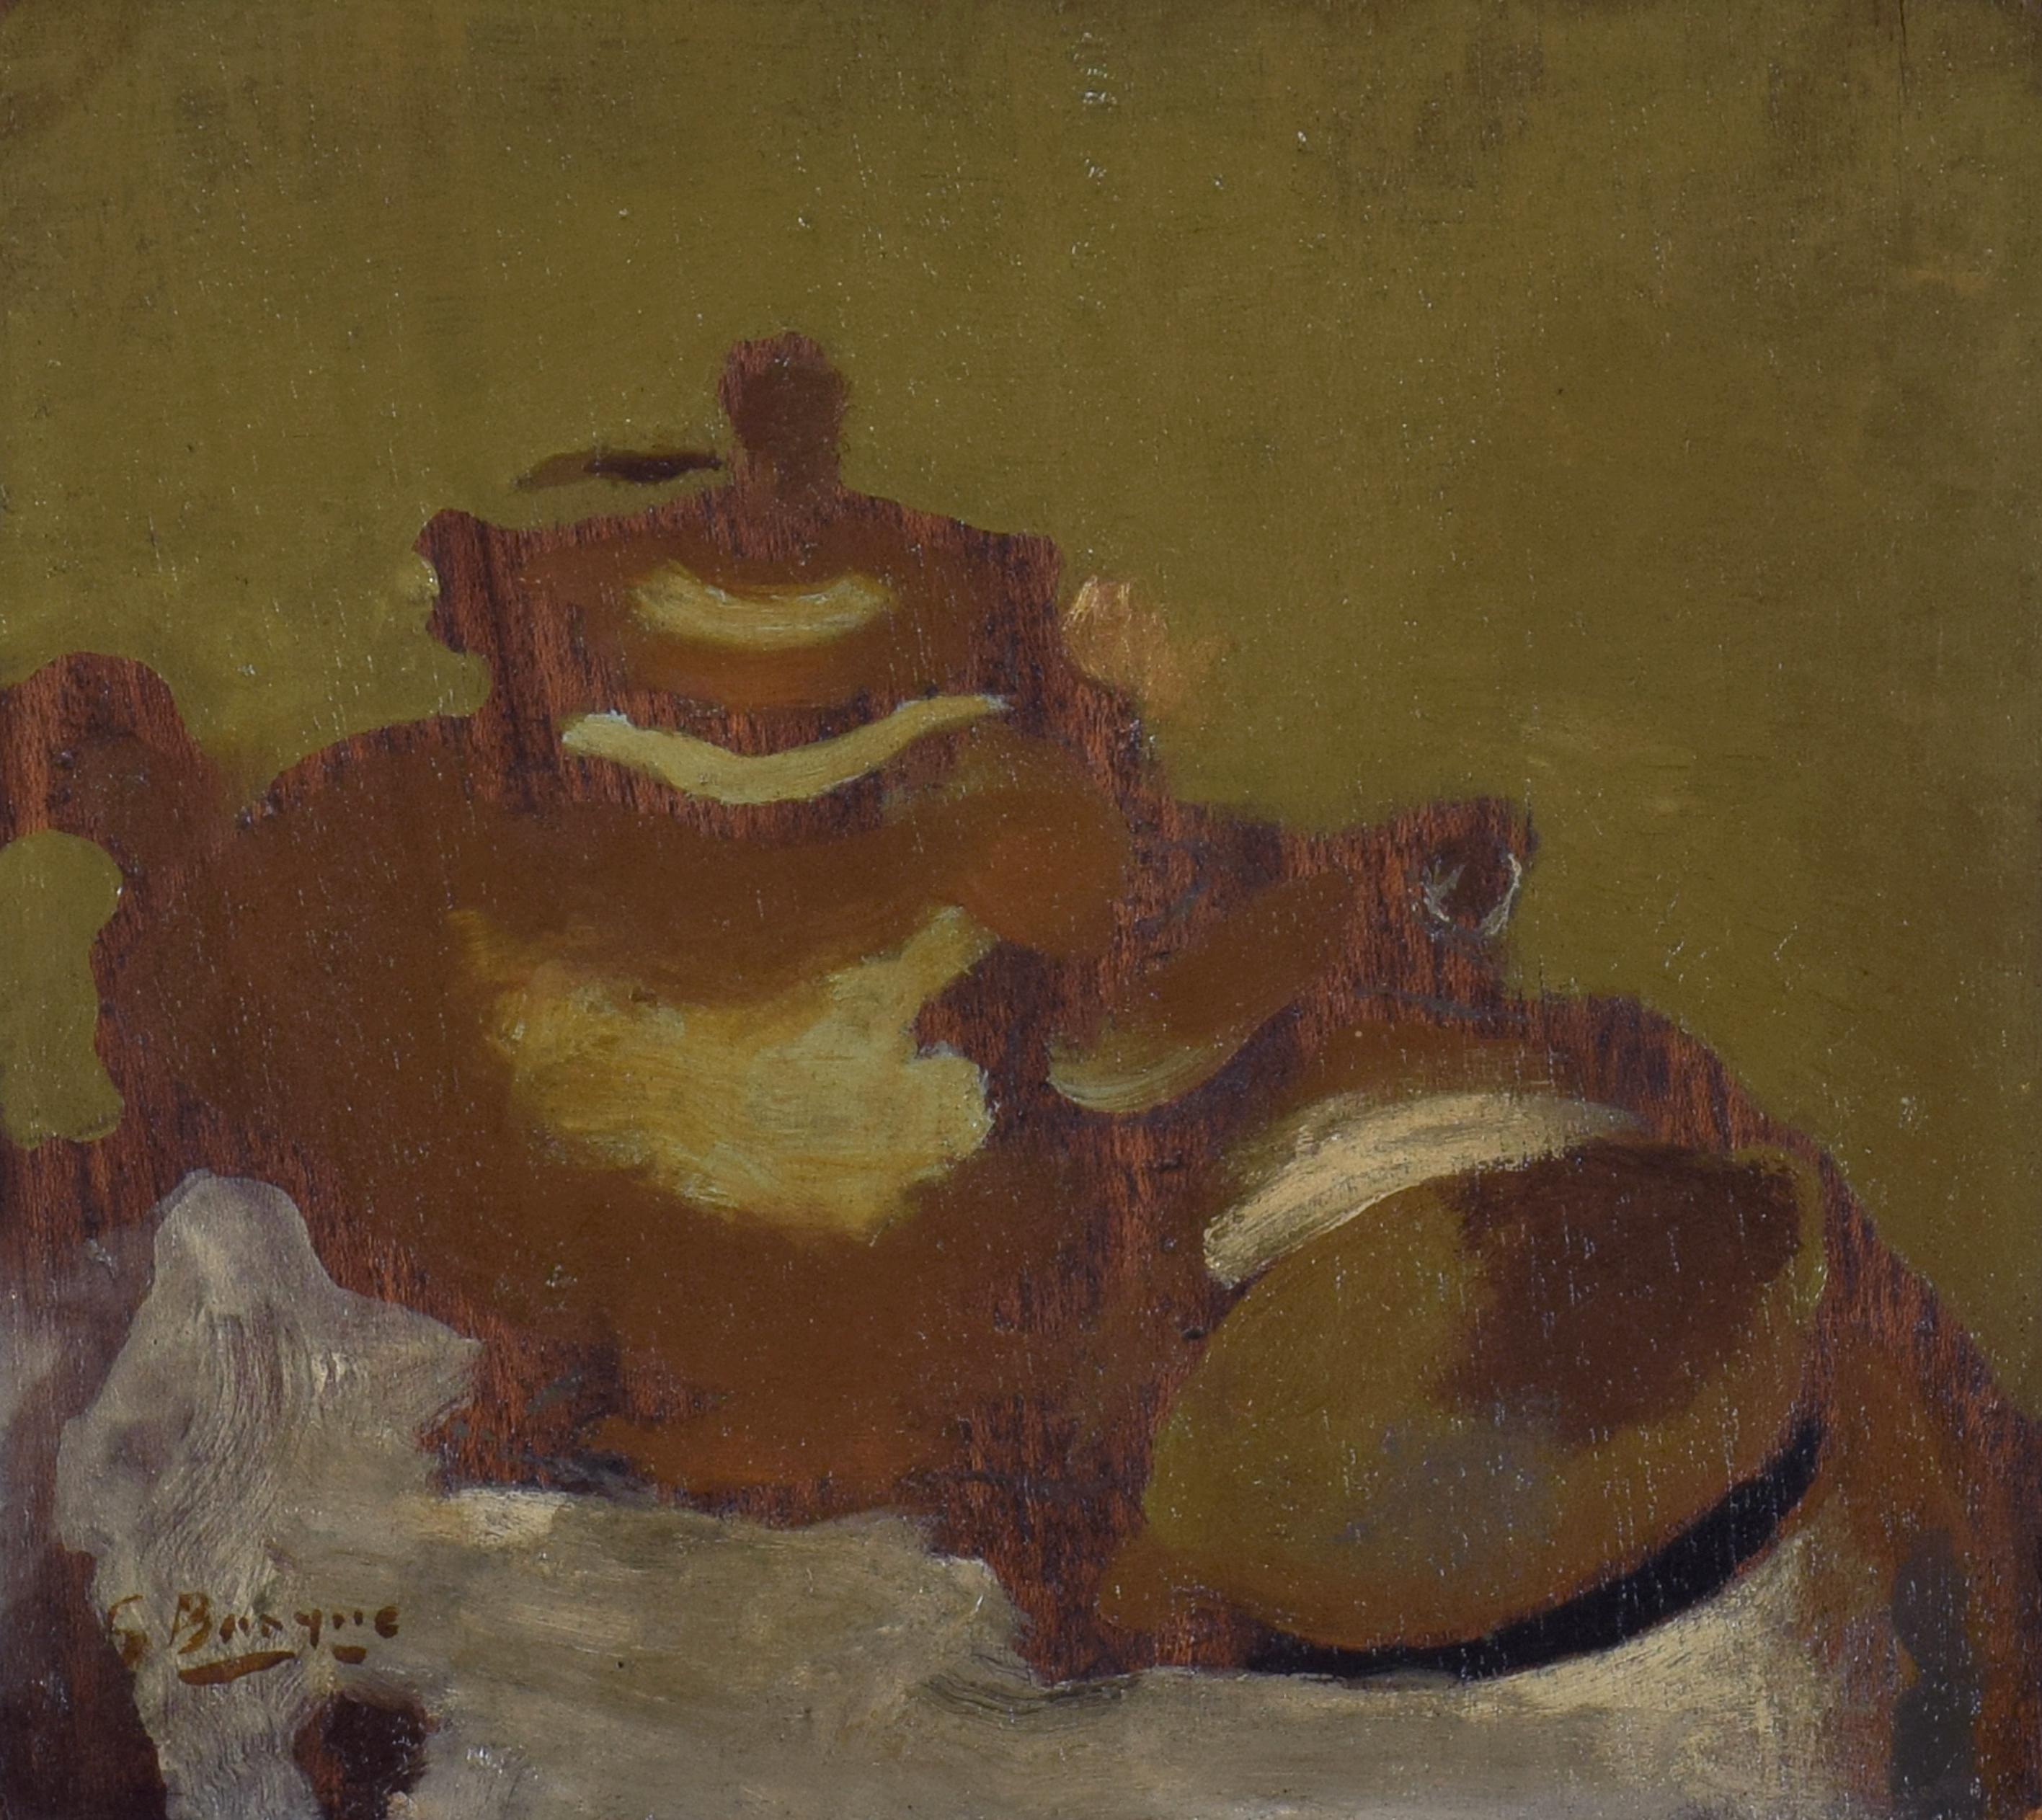 Théière et Citron by Georges Braque - Still life oil painting